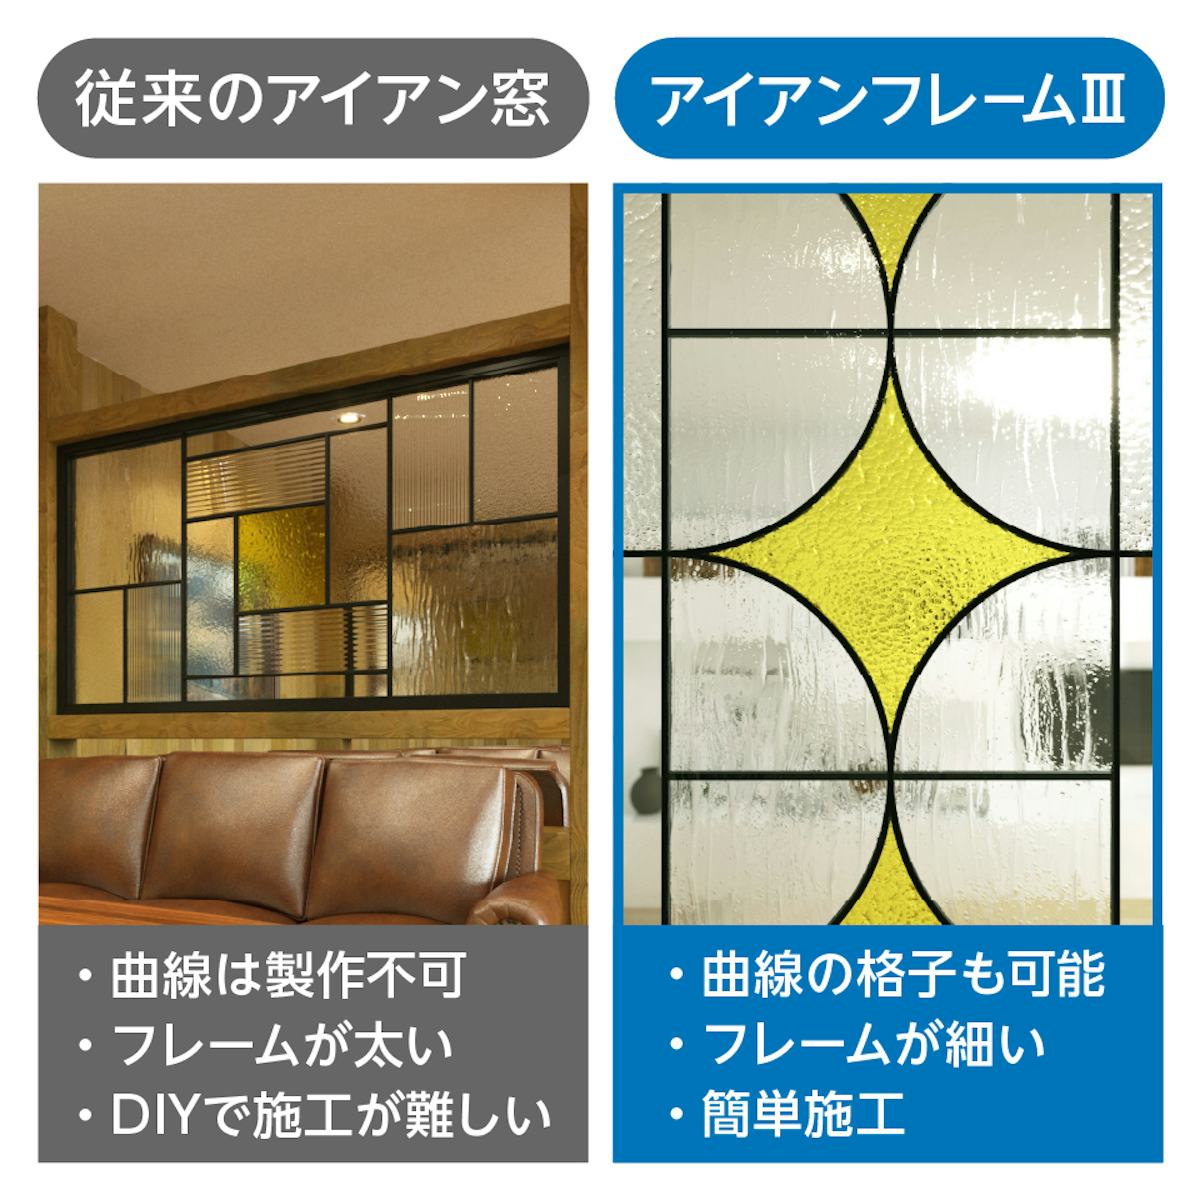 「ステンド風アイアン窓 アイアンフレームⅢ」の、従来のアイアン窓との違い